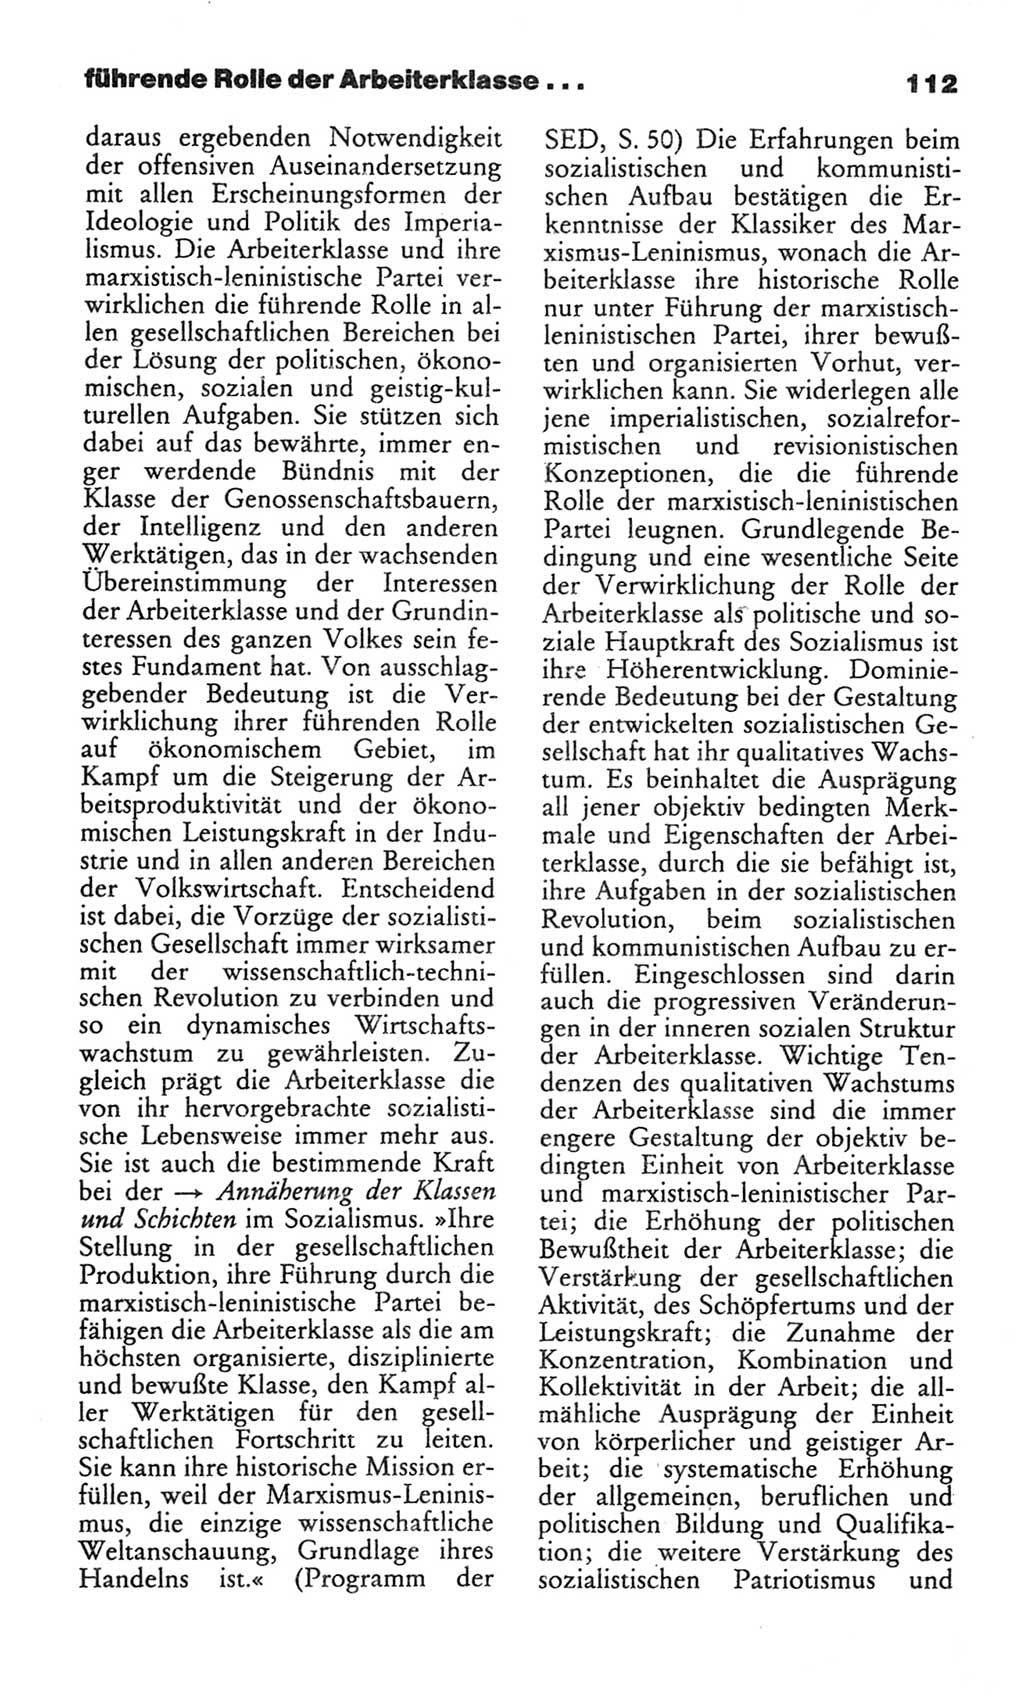 Wörterbuch des wissenschaftlichen Kommunismus [Deutsche Demokratische Republik (DDR)] 1982, Seite 112 (Wb. wiss. Komm. DDR 1982, S. 112)